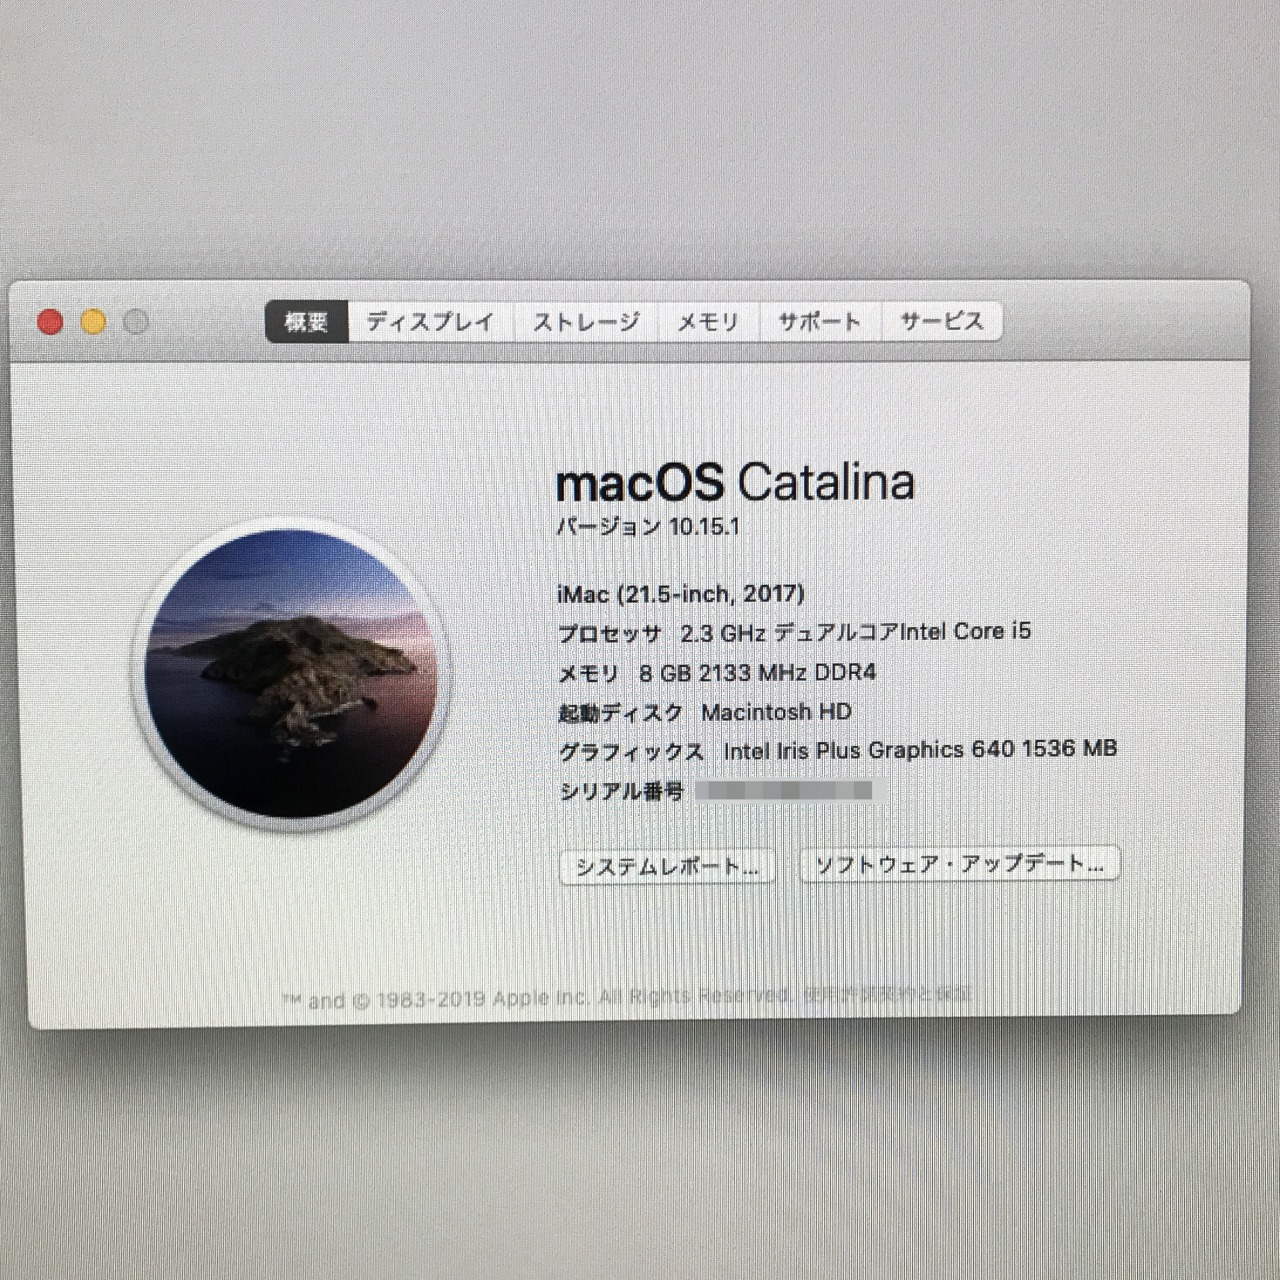 iMac (21.5-inch, 2017) 遅いマシンを SSD交換で 速度アップ